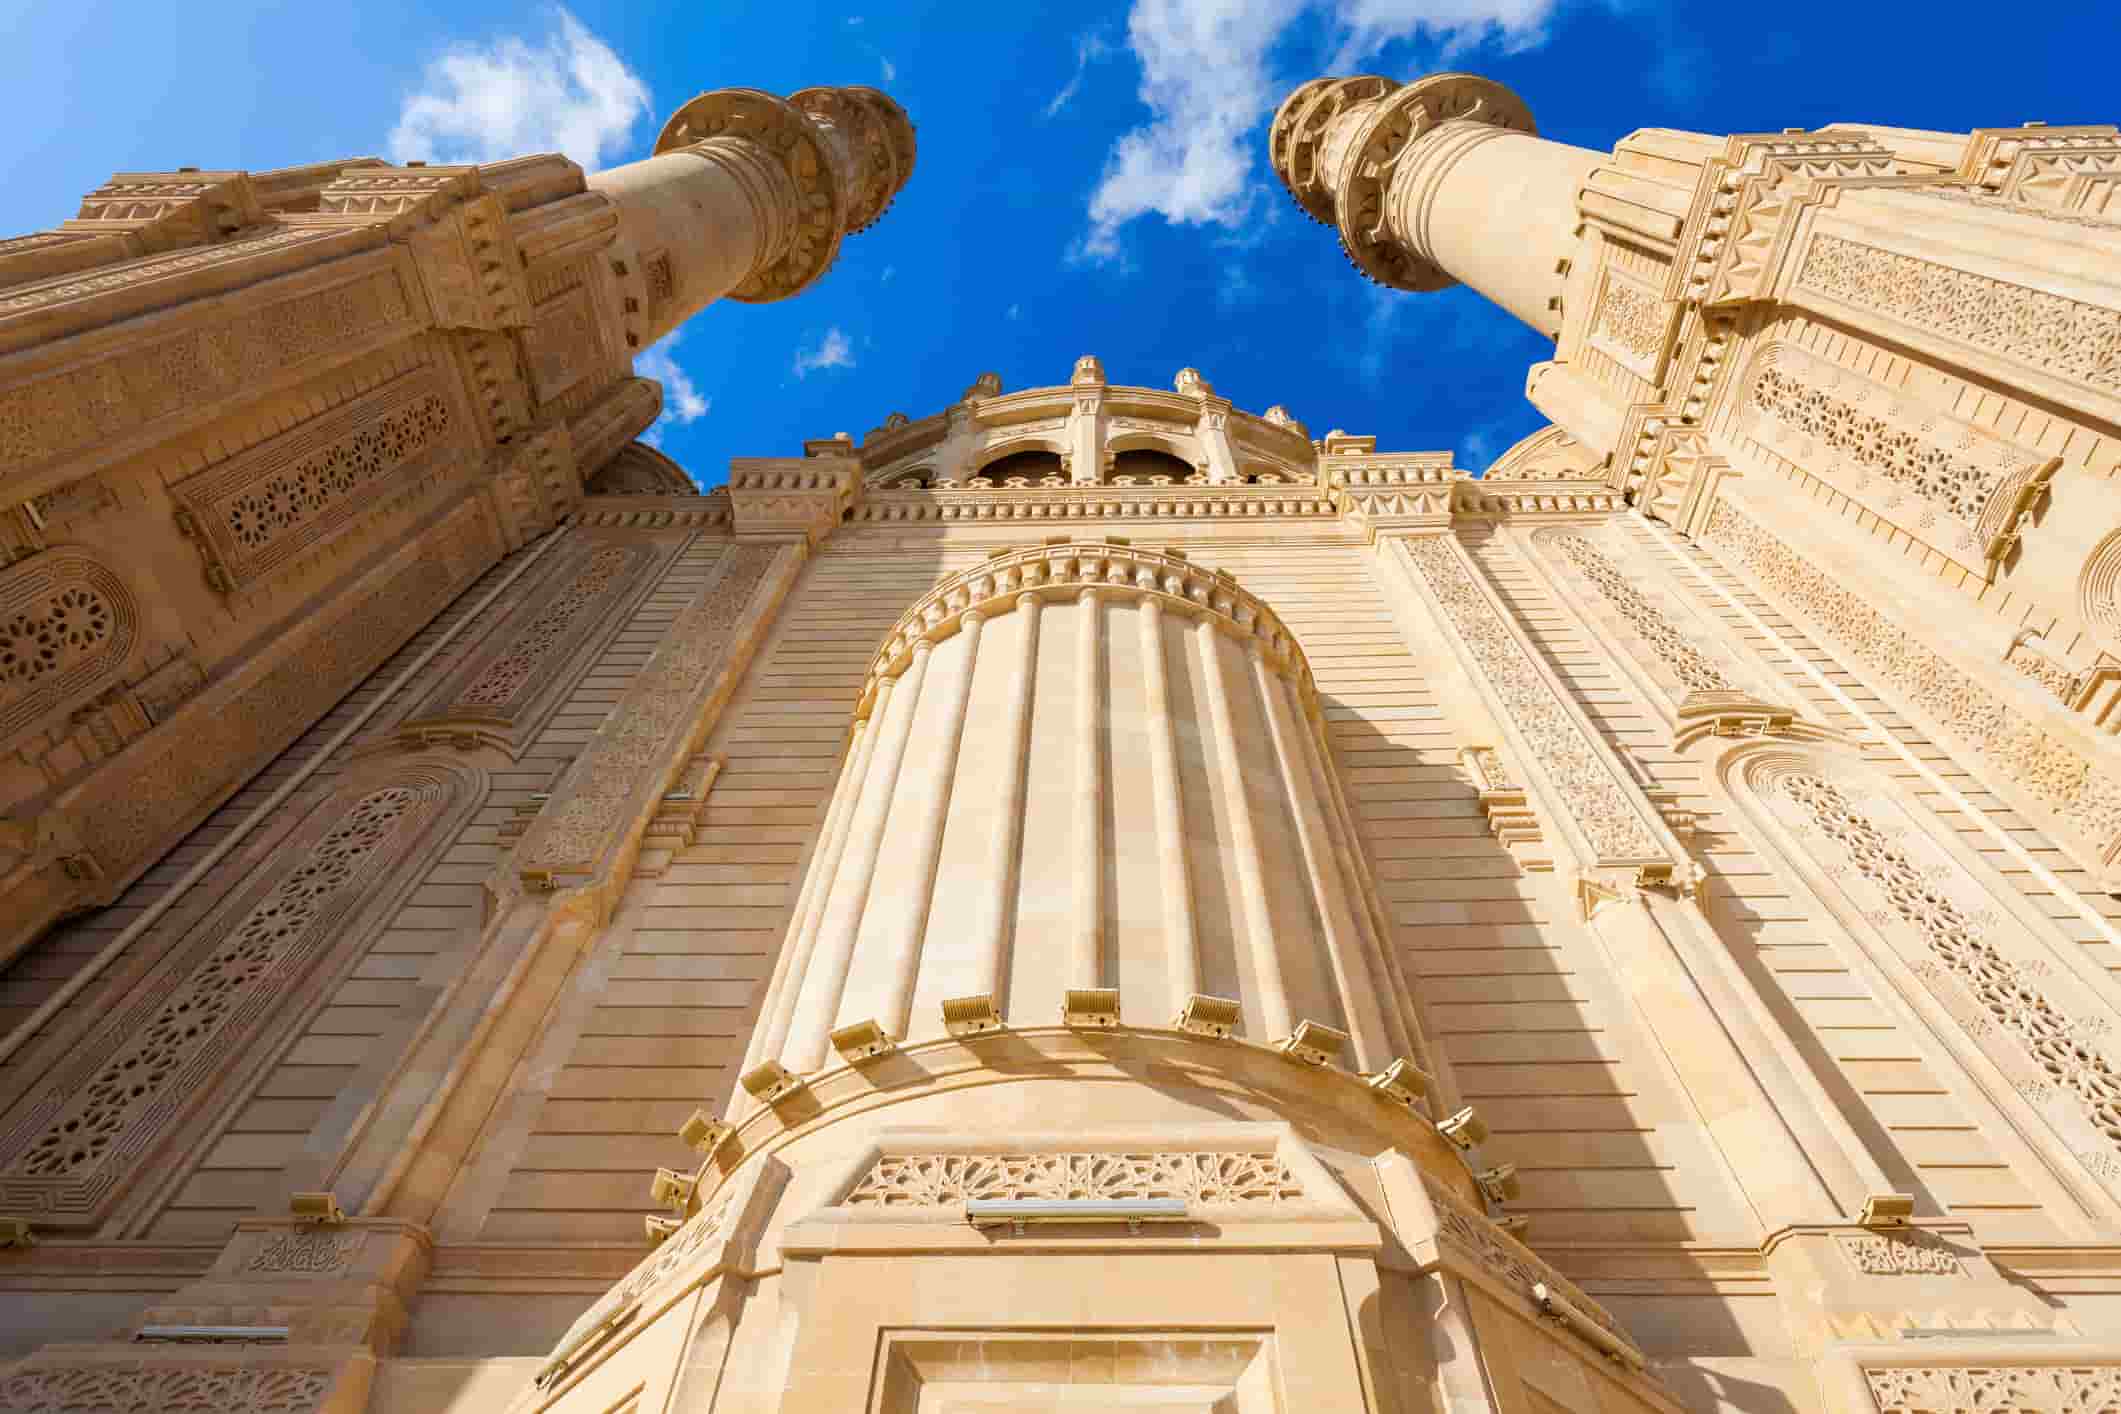 The Heydar Mosque in Baku